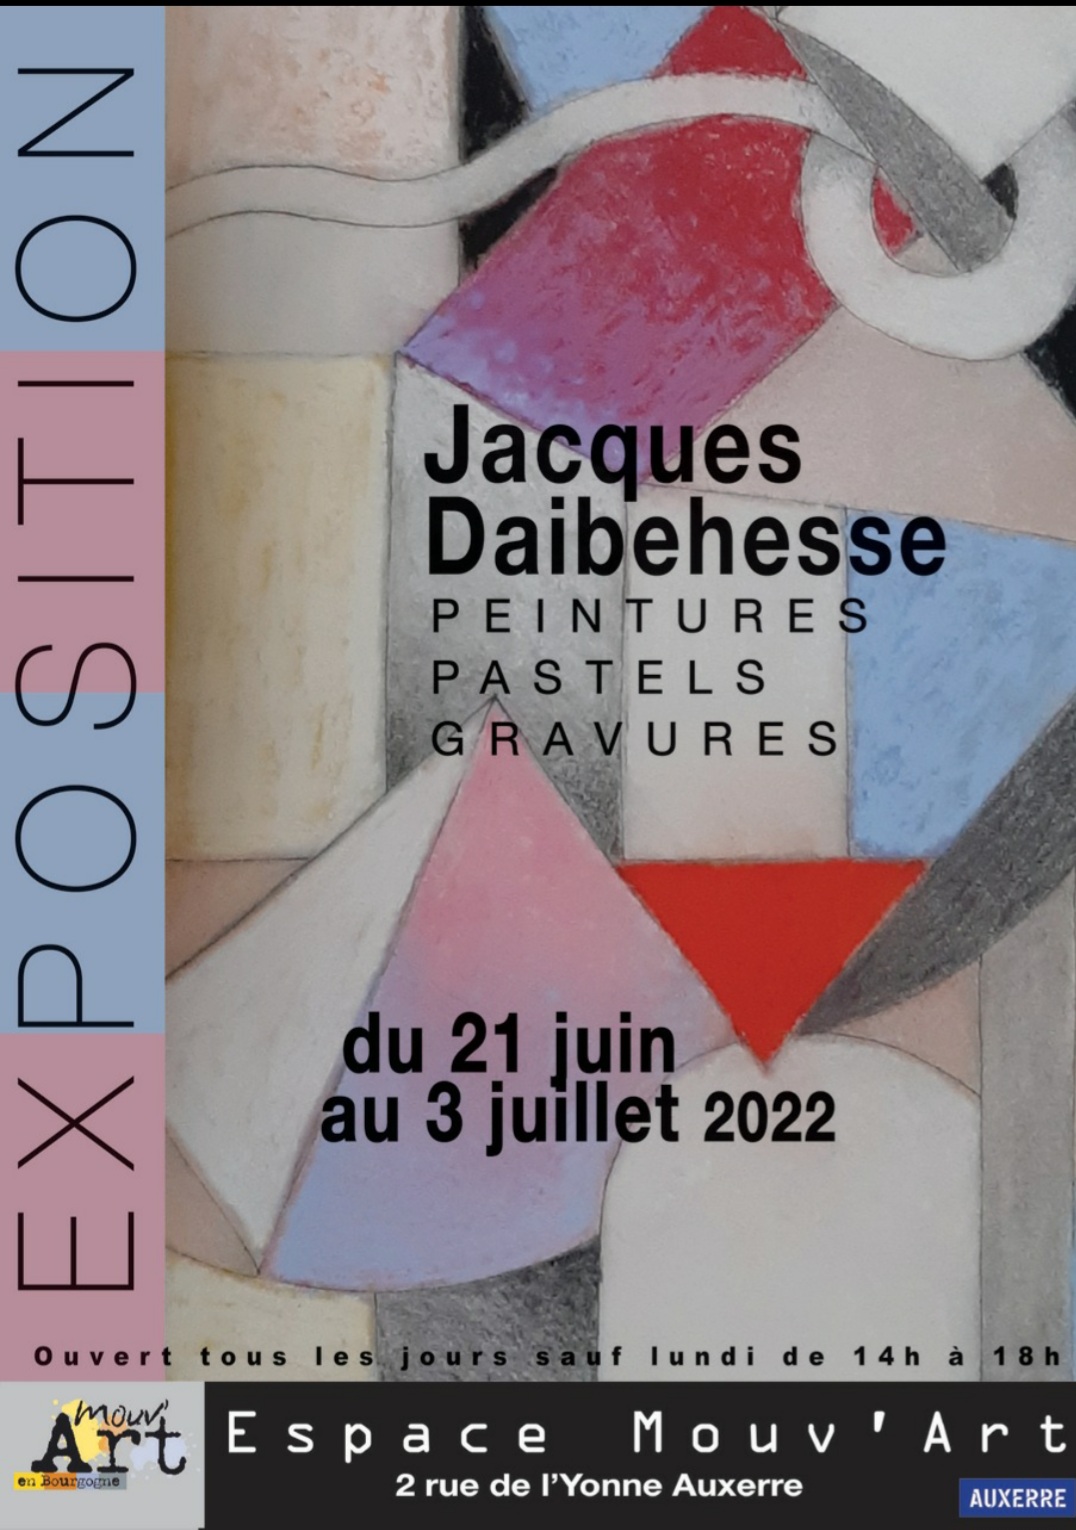 Jacques Daibehesse